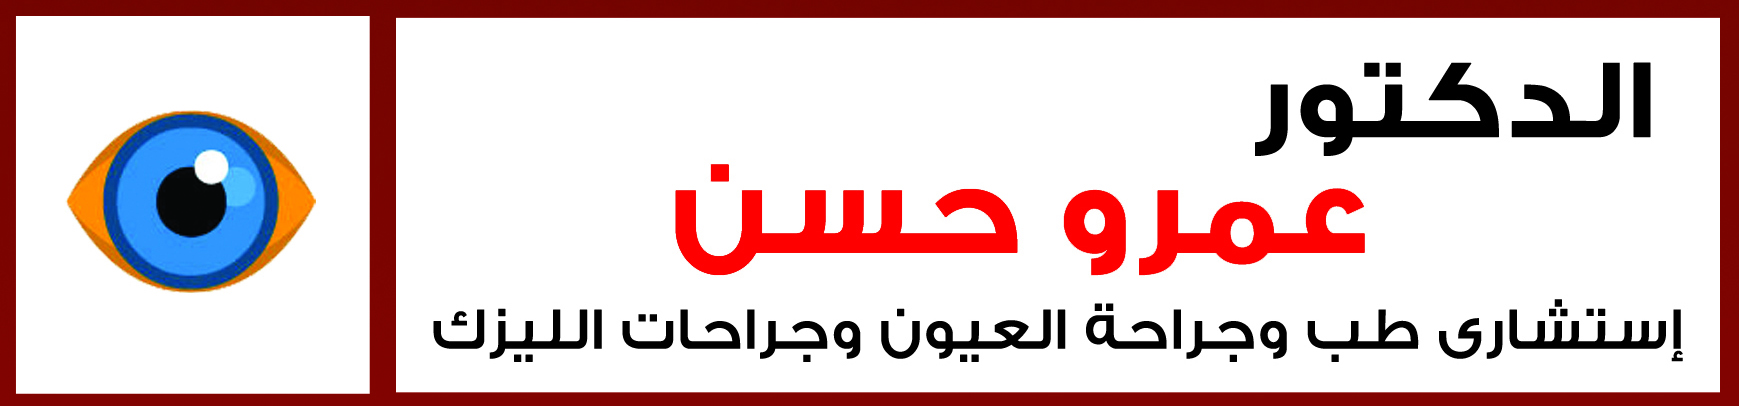 د/ عمرو حسن إستشاري طب وجراحة العيون وجراحات الليزك 